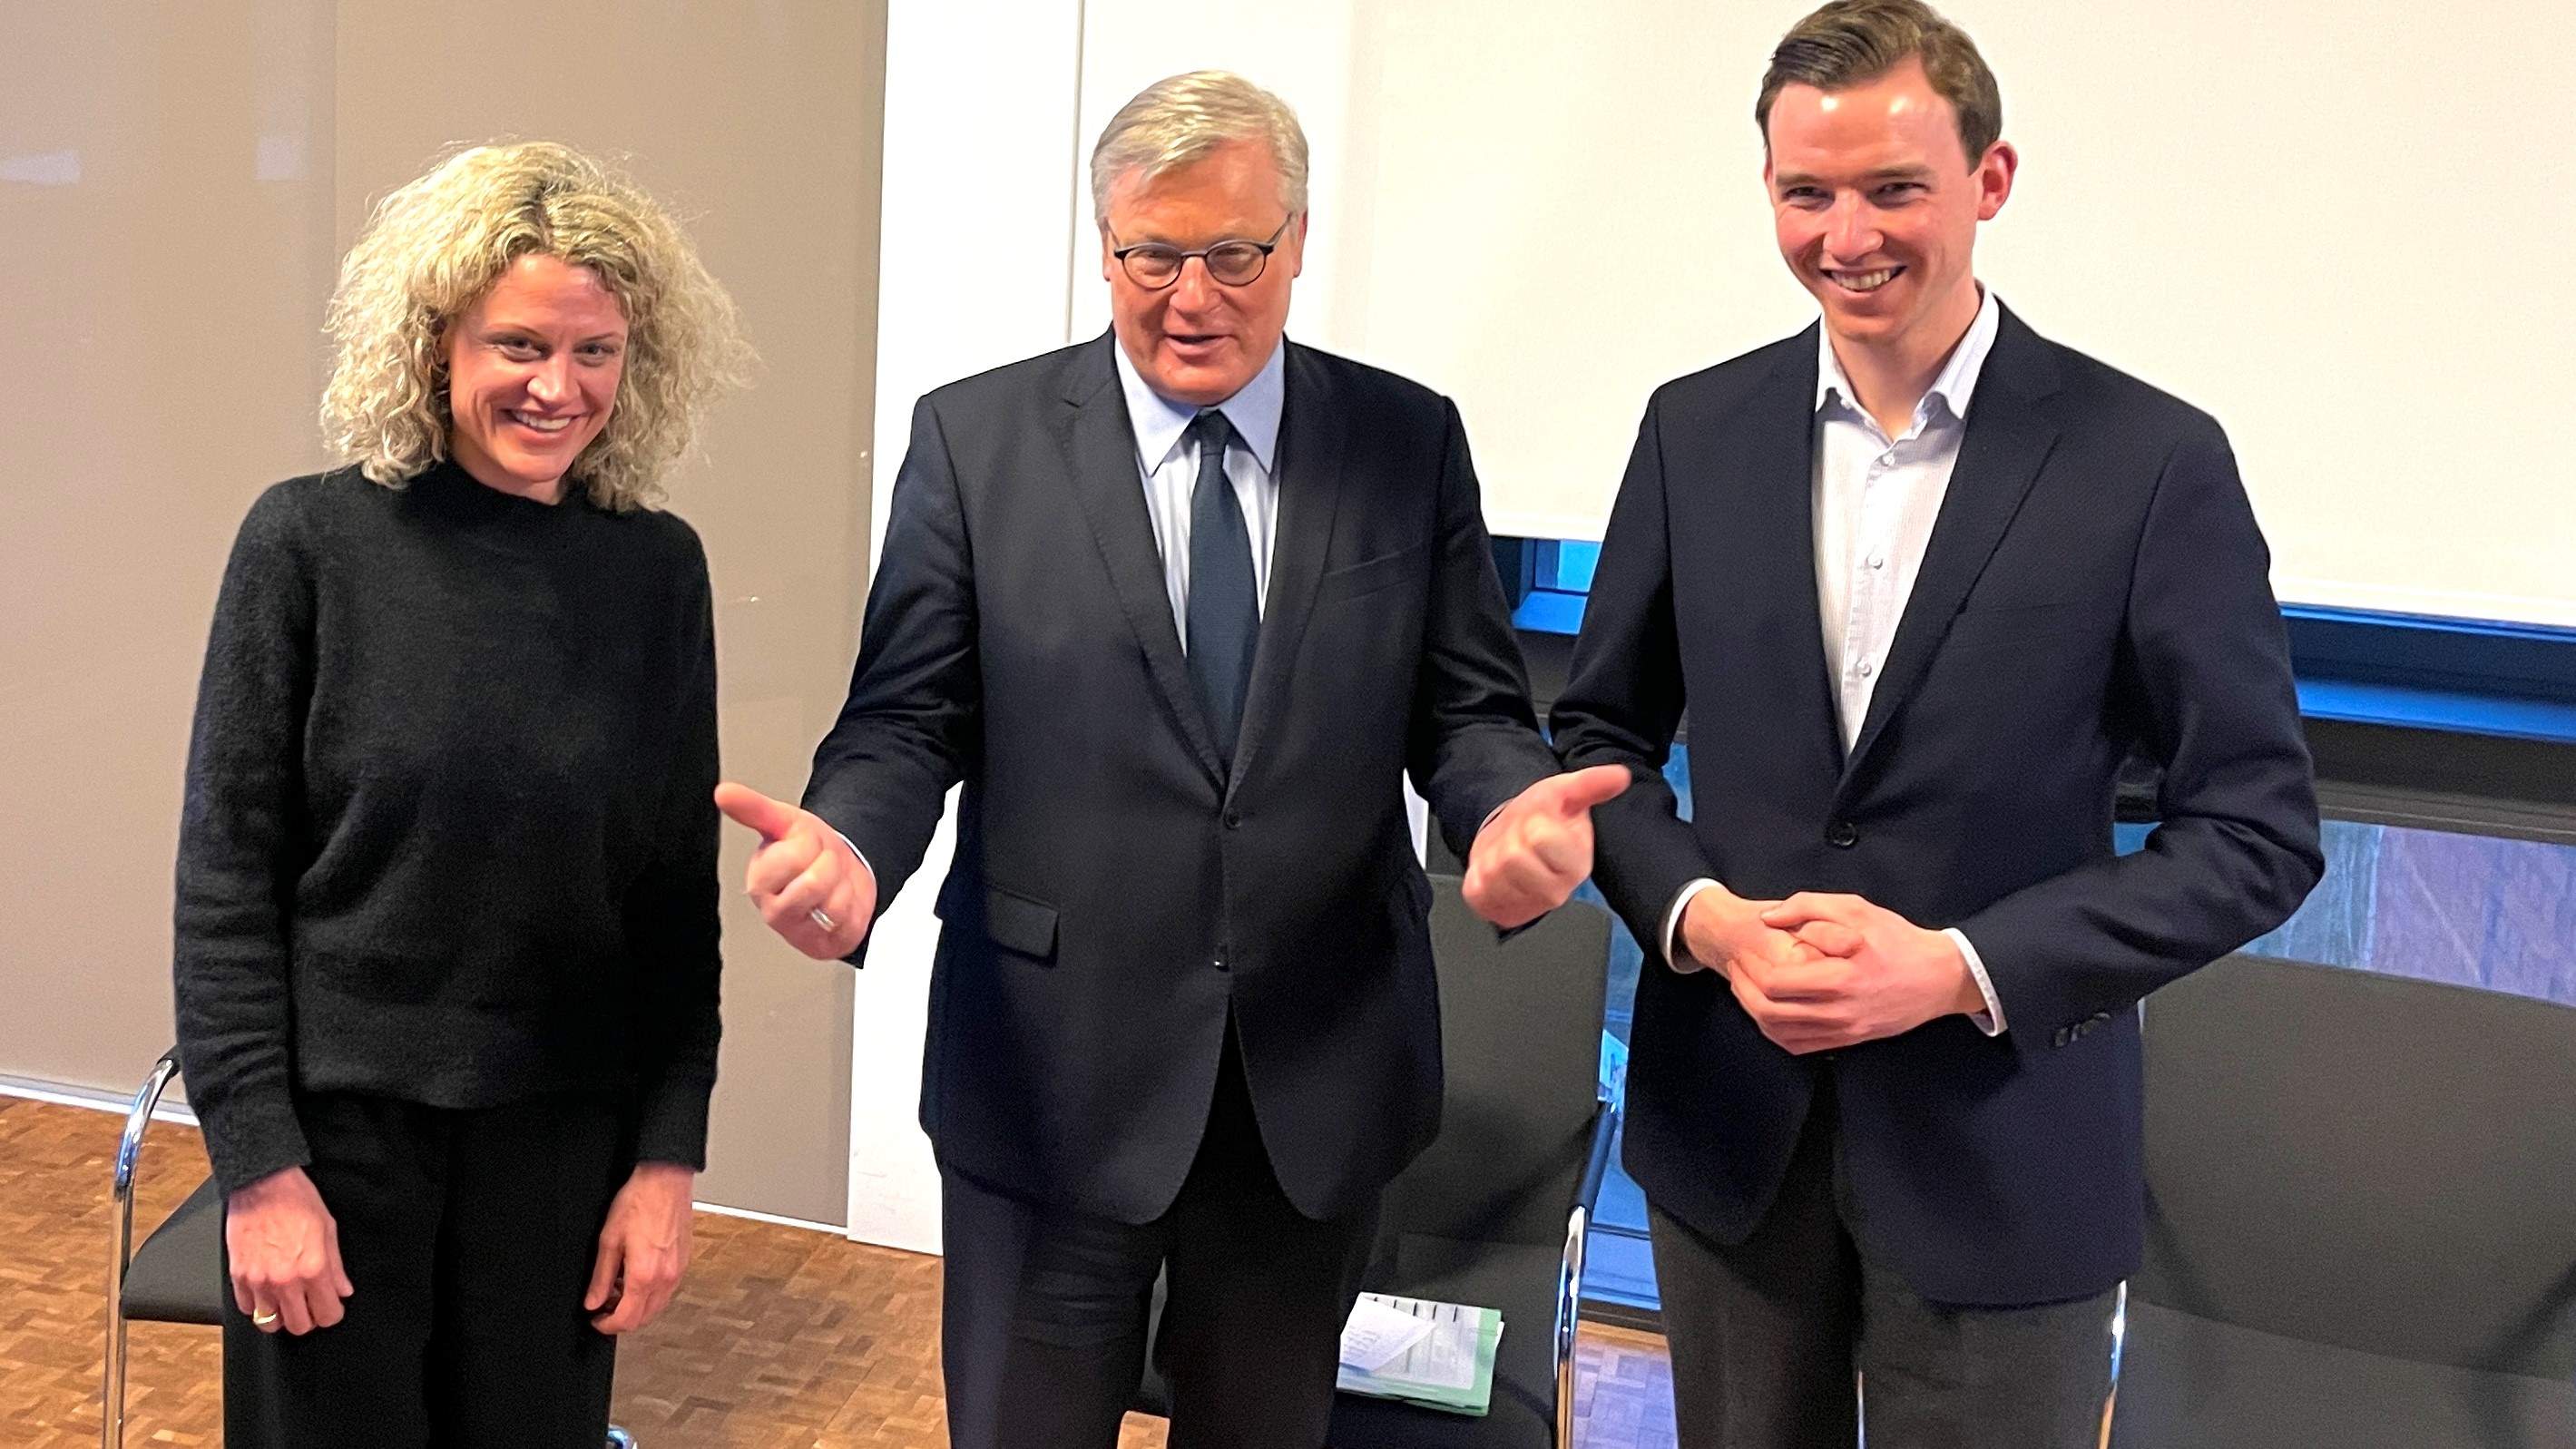 Minister Dr. Bernd Althusmann (m.) mit den Landtagskandidaten Teresa Küppers und Dr. Julian Allendorf. Simone Wendland war im Plenum des NRW-Landtags gebunden und verhindert.